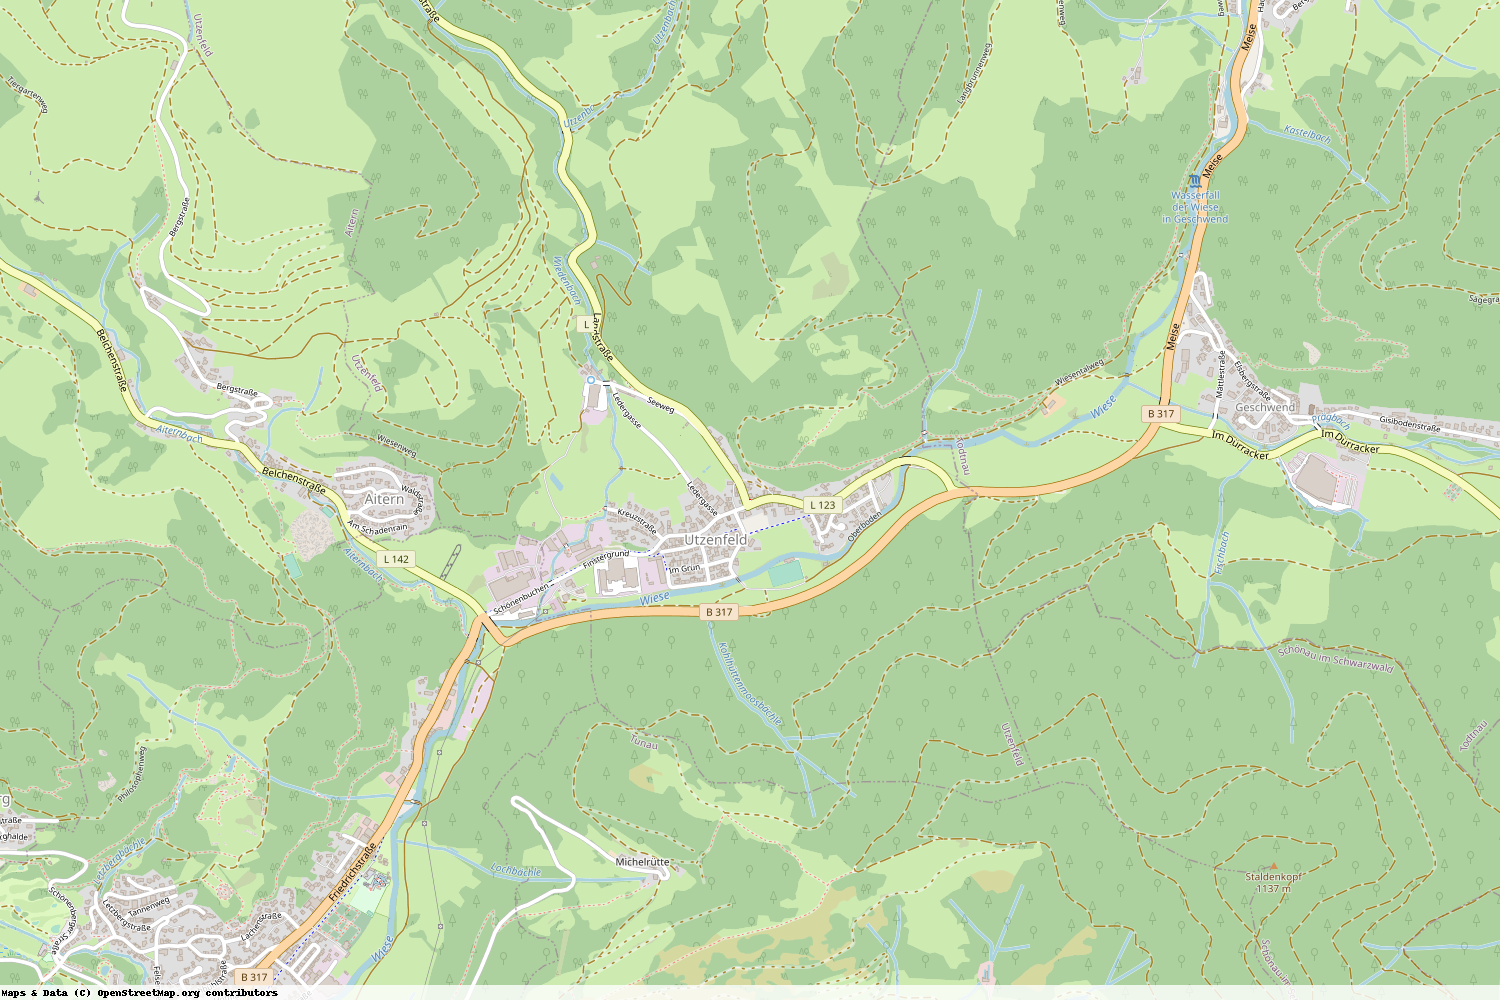 Ist gerade Stromausfall in Baden-Württemberg - Lörrach - Utzenfeld?